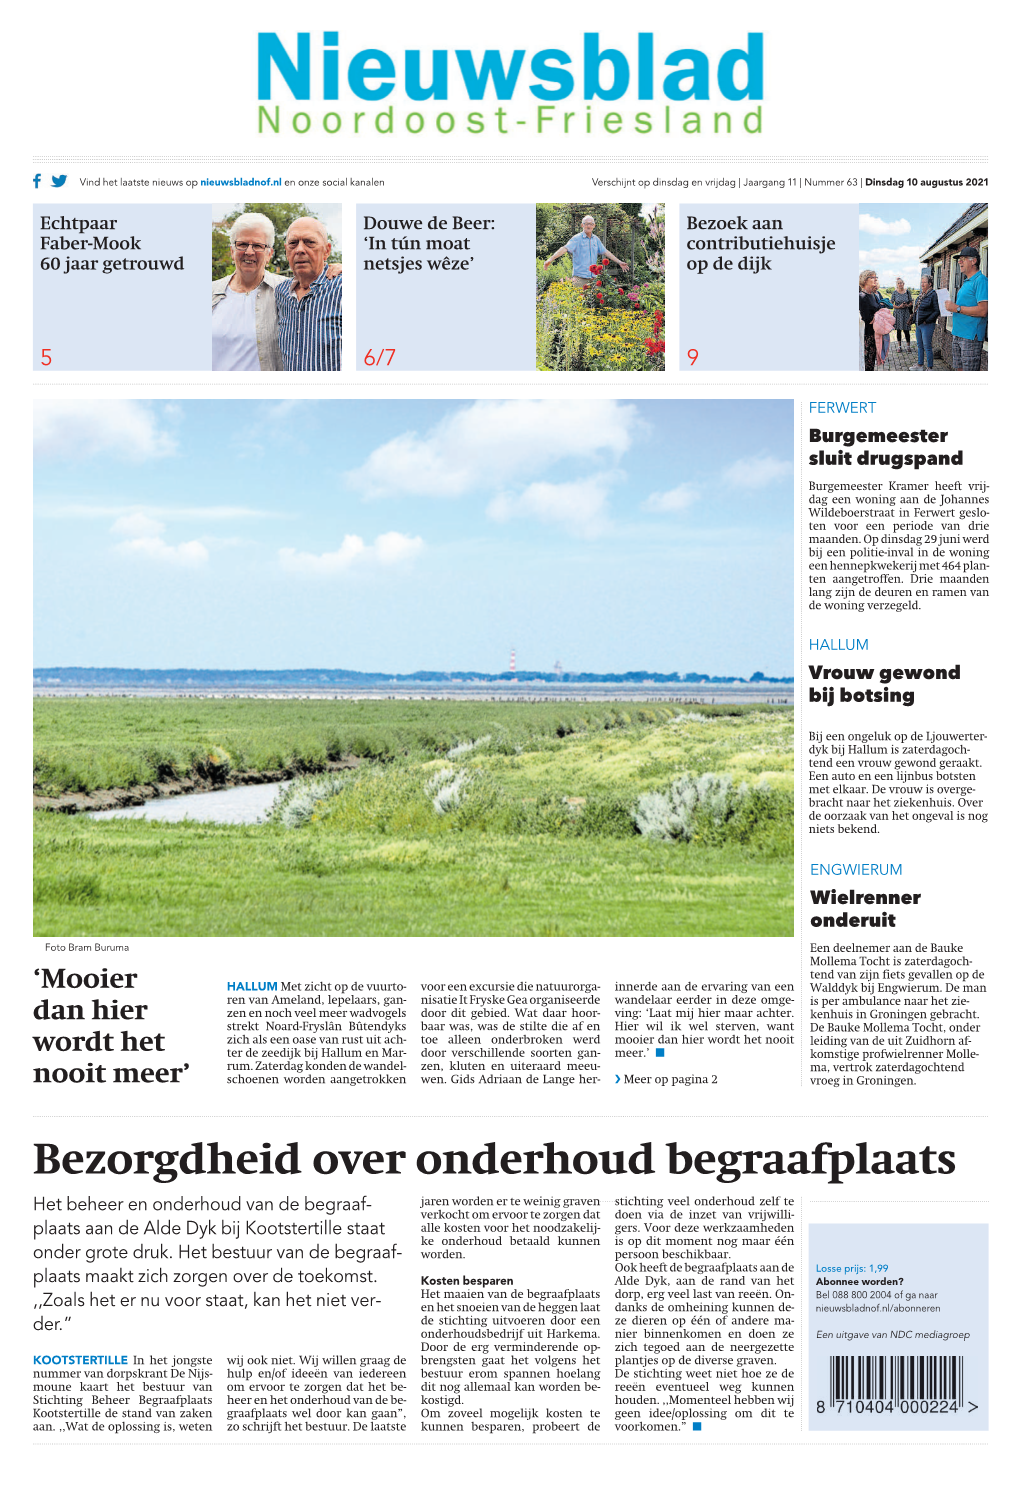 Nieuwsblad Noordoost Friesland Verschijnt Elke Dinsdag En Vrijdag Uiterste Aanlevertijd Vanfamilieberichten Daags Voor Verschijning Tot14.00 Uur